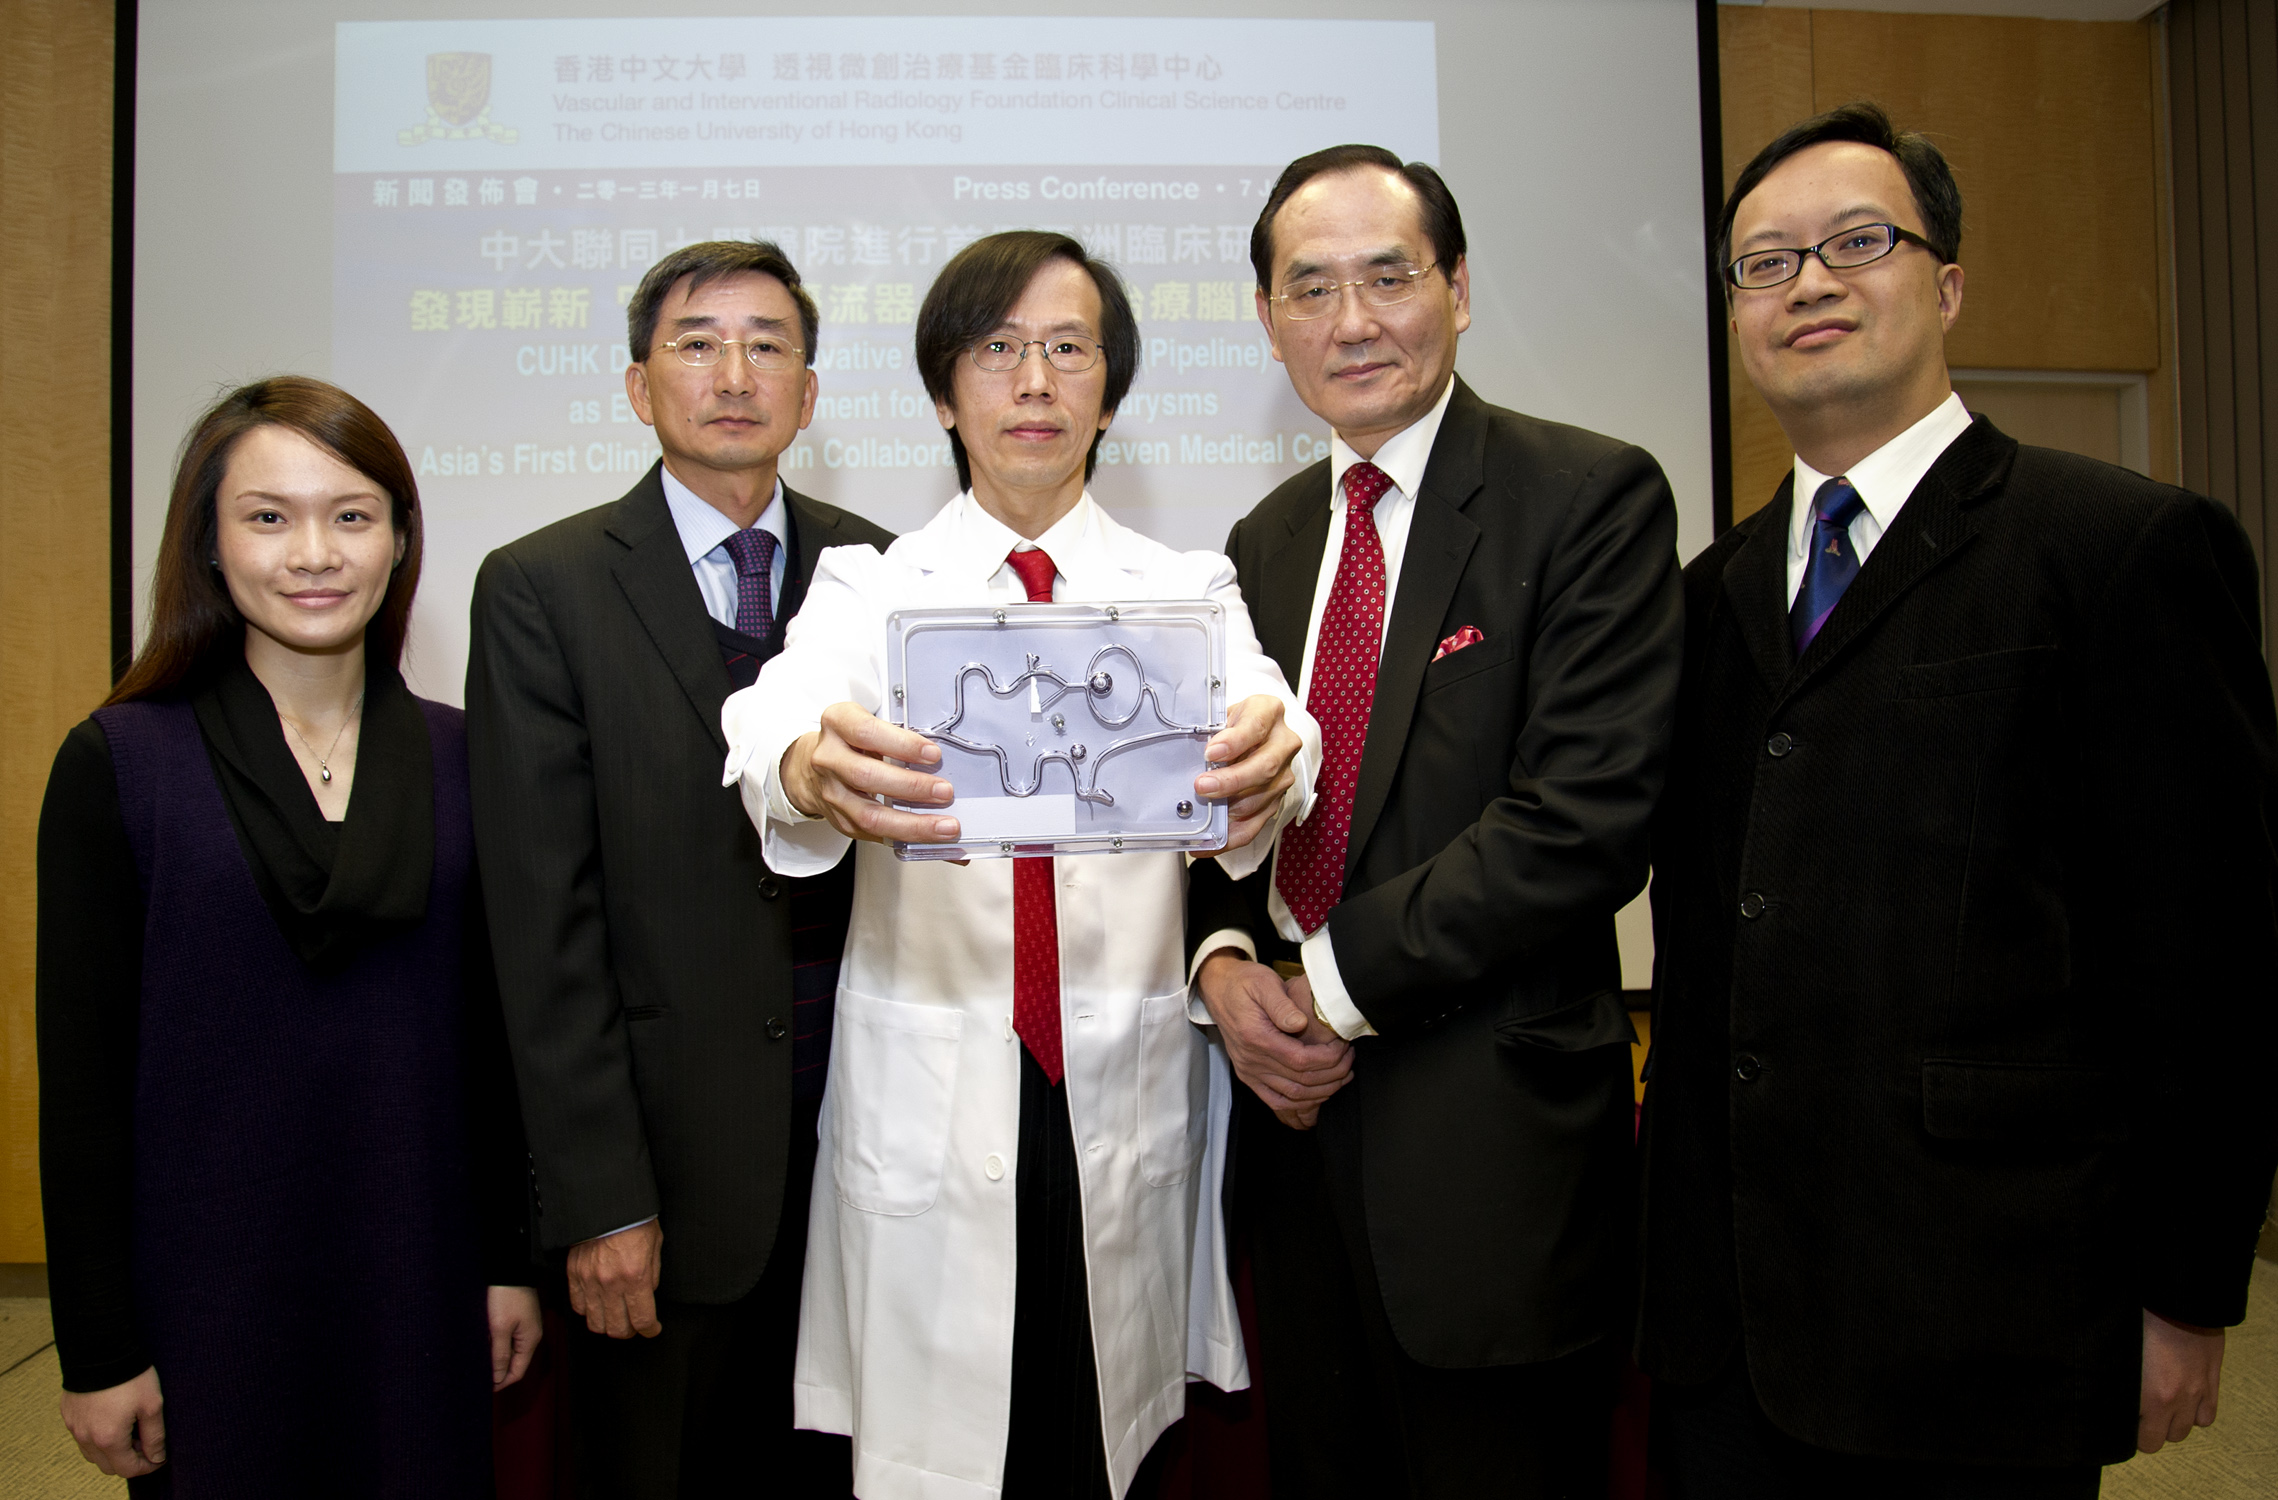 余俊豪教授與合作醫院的研究團隊代表